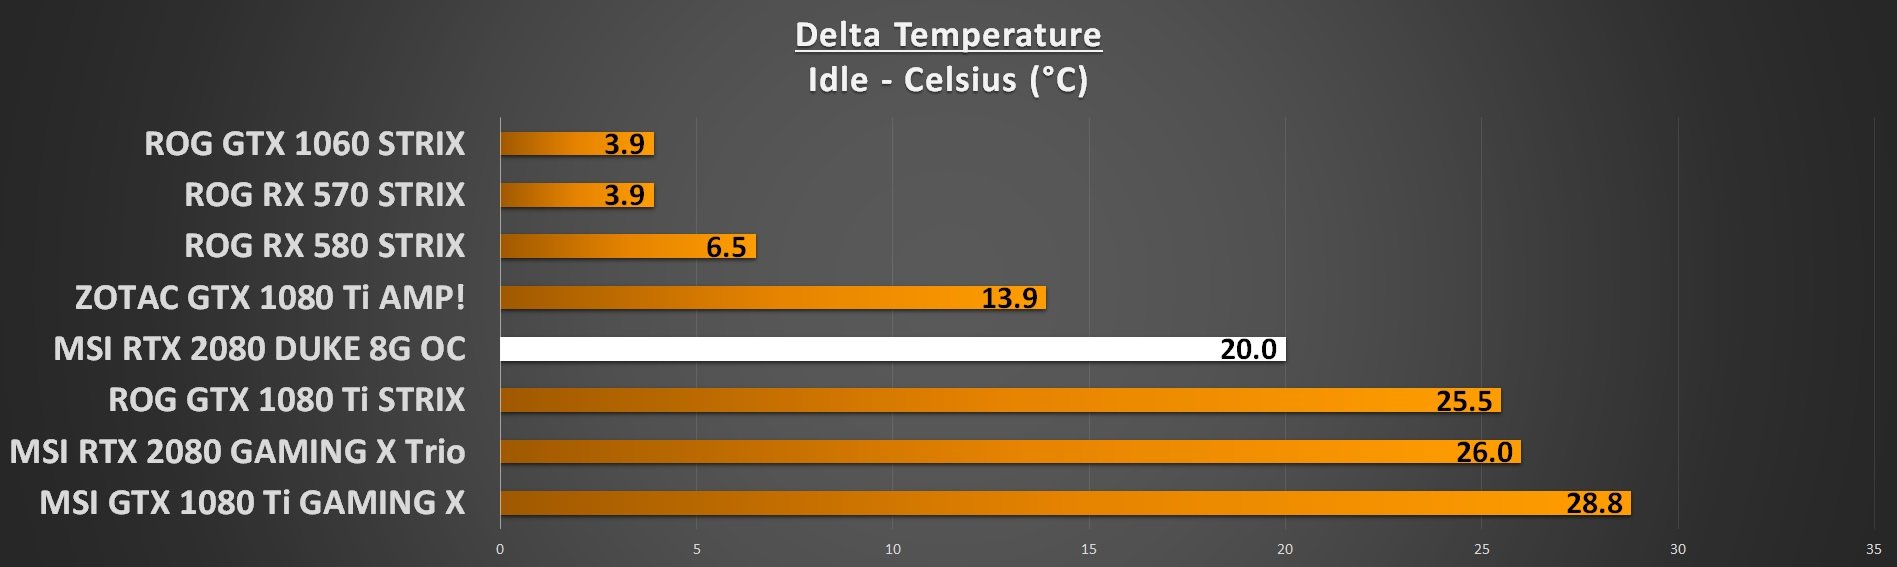 GPU Temperatures Idle